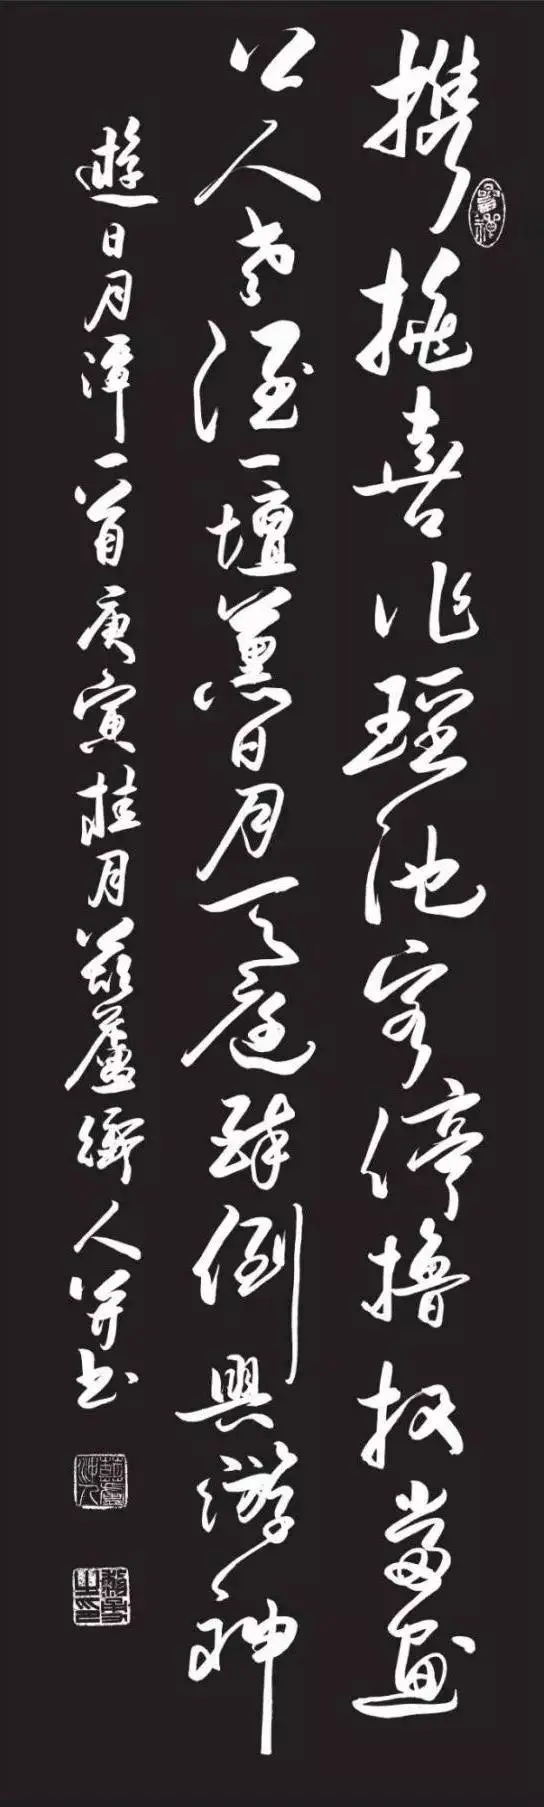 揽胜遗痕——黎勇诗词书法作品展于12月14日湖南省画院举行